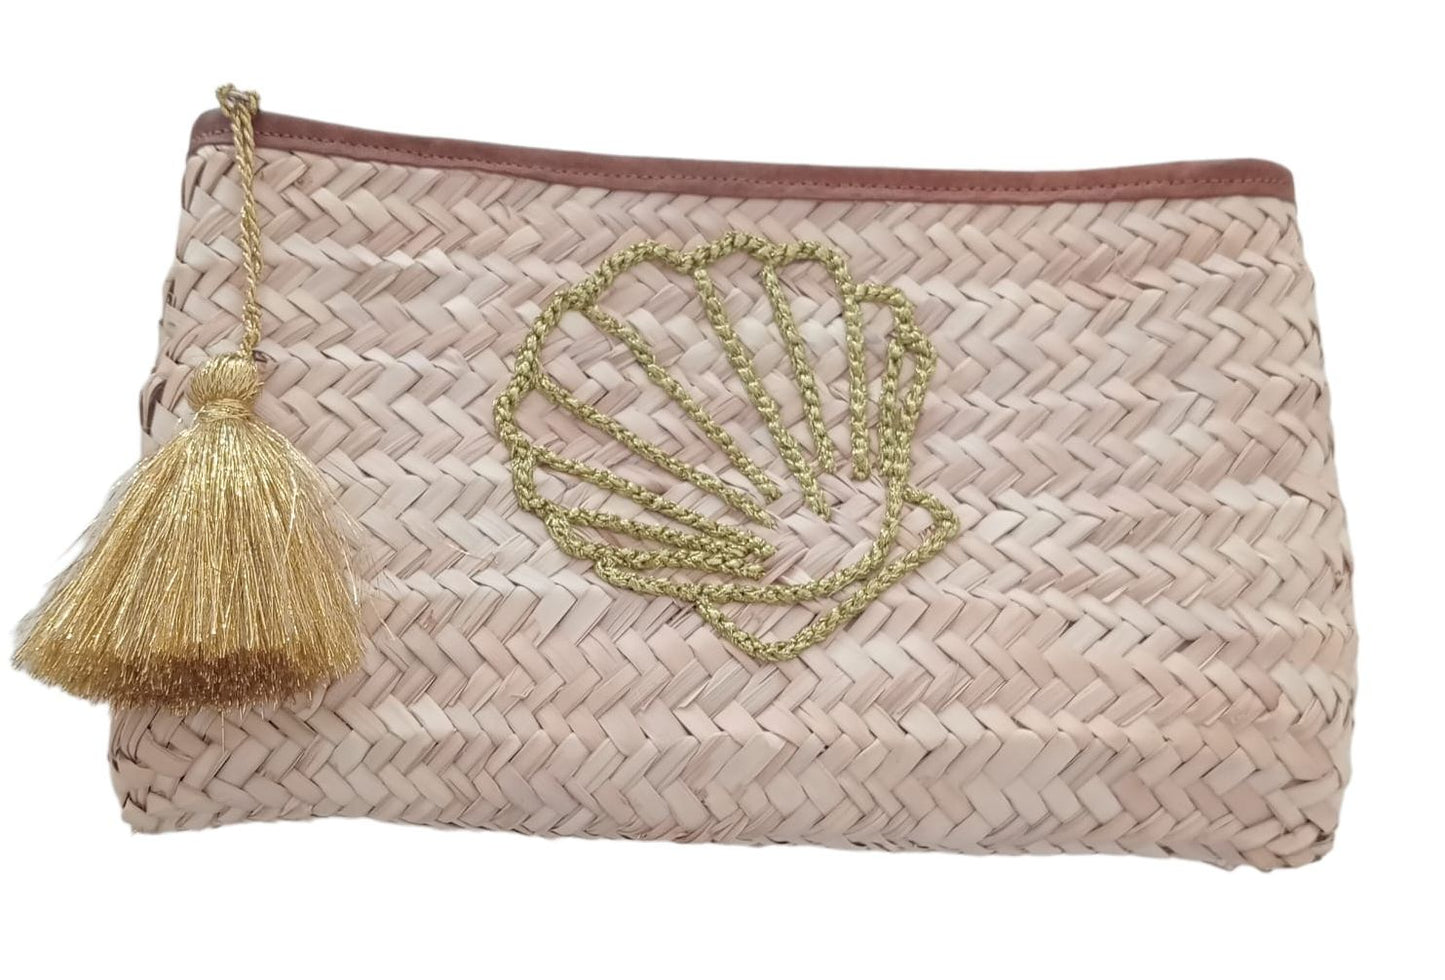 Pochette rettangolare fatta a mano e intrecciata in foglie di palma con ricami in lana, motivo Conchiglia Dorata